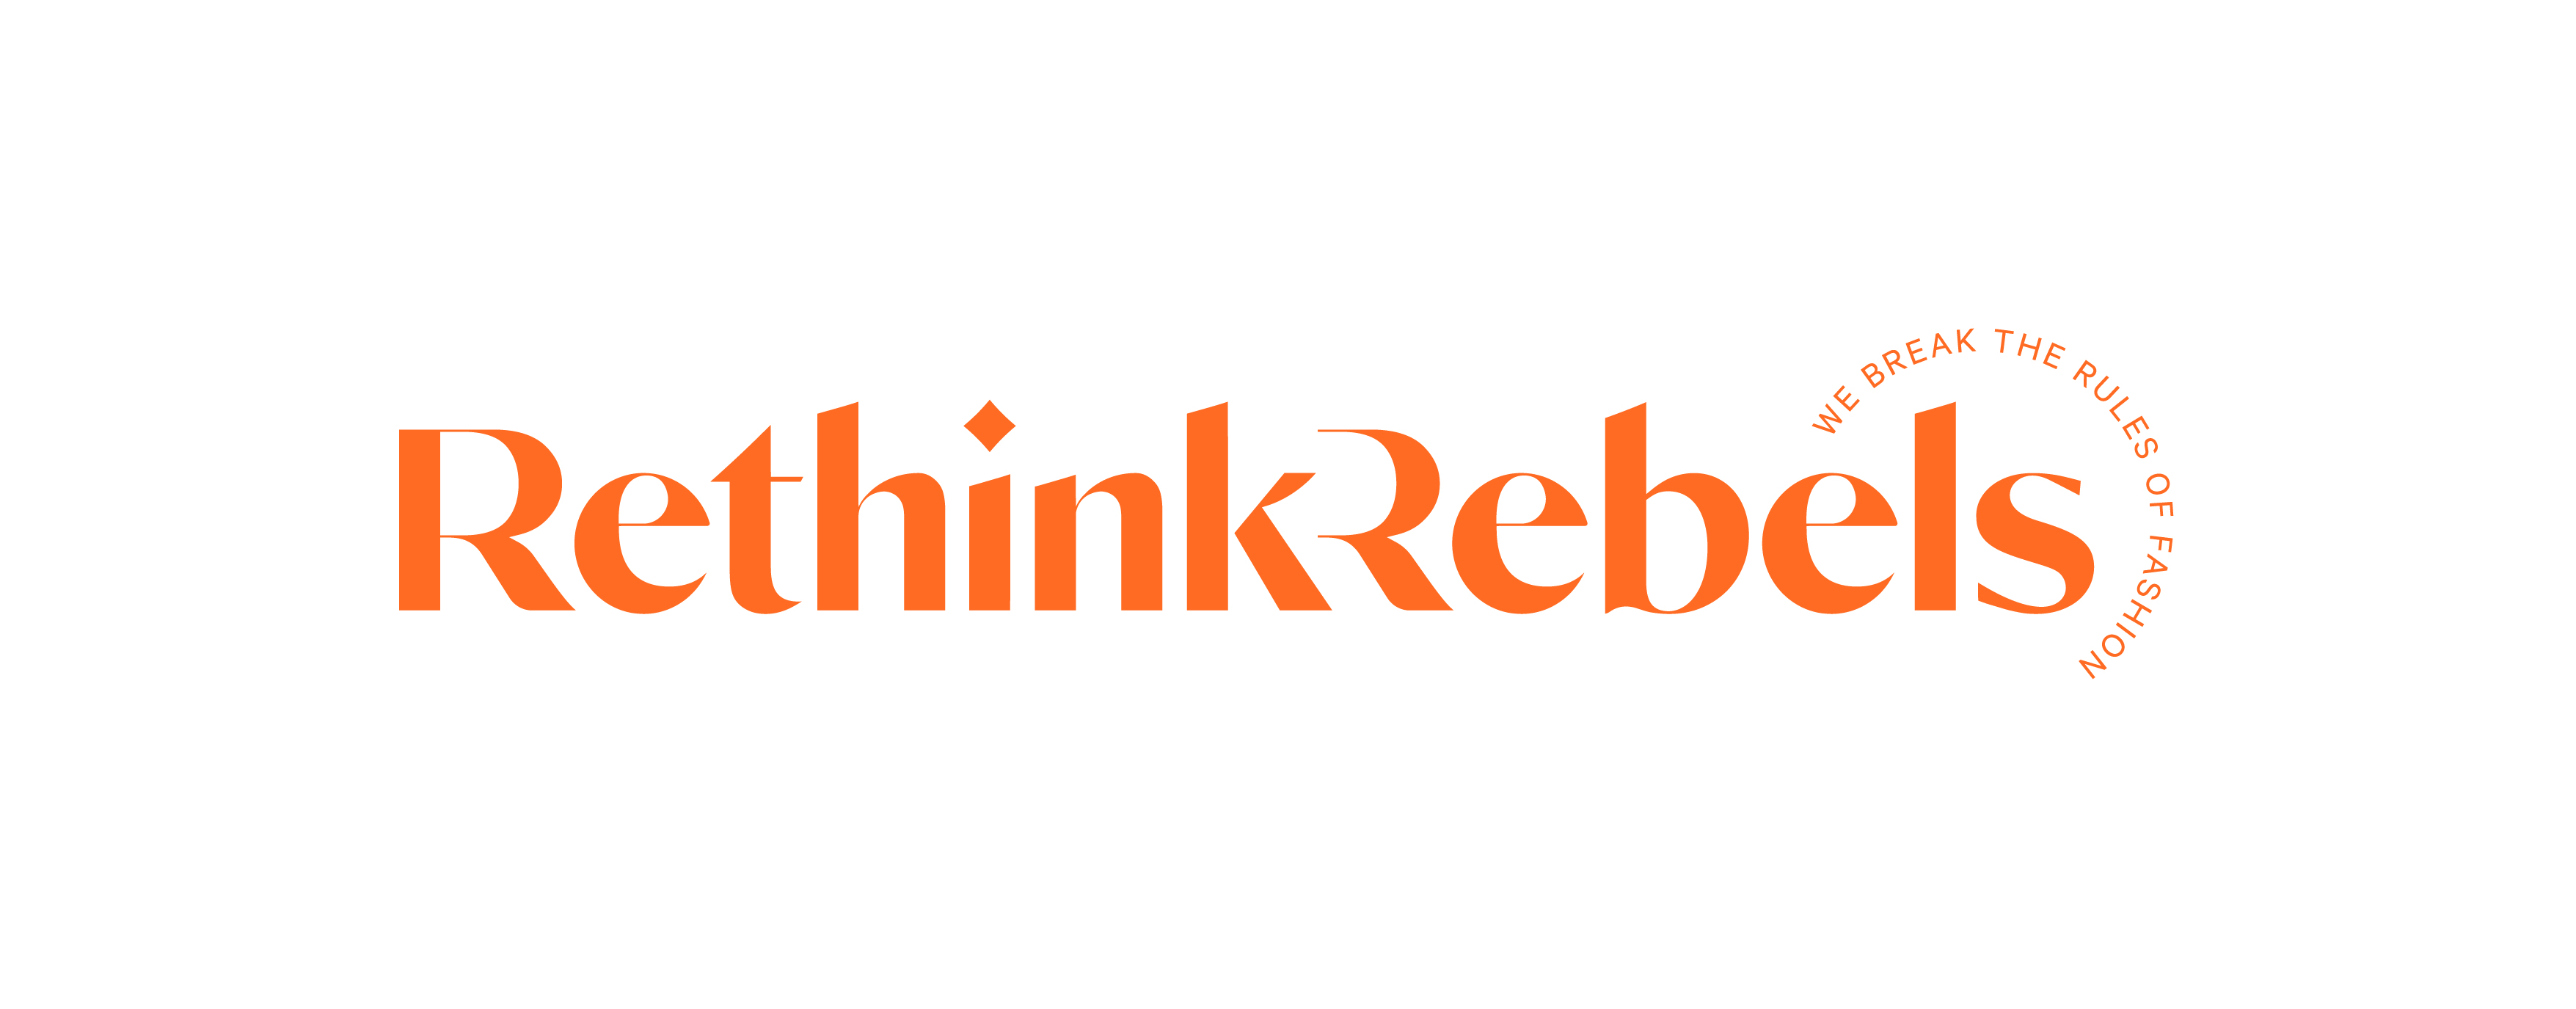 Organisations logo image for RethinkRebels